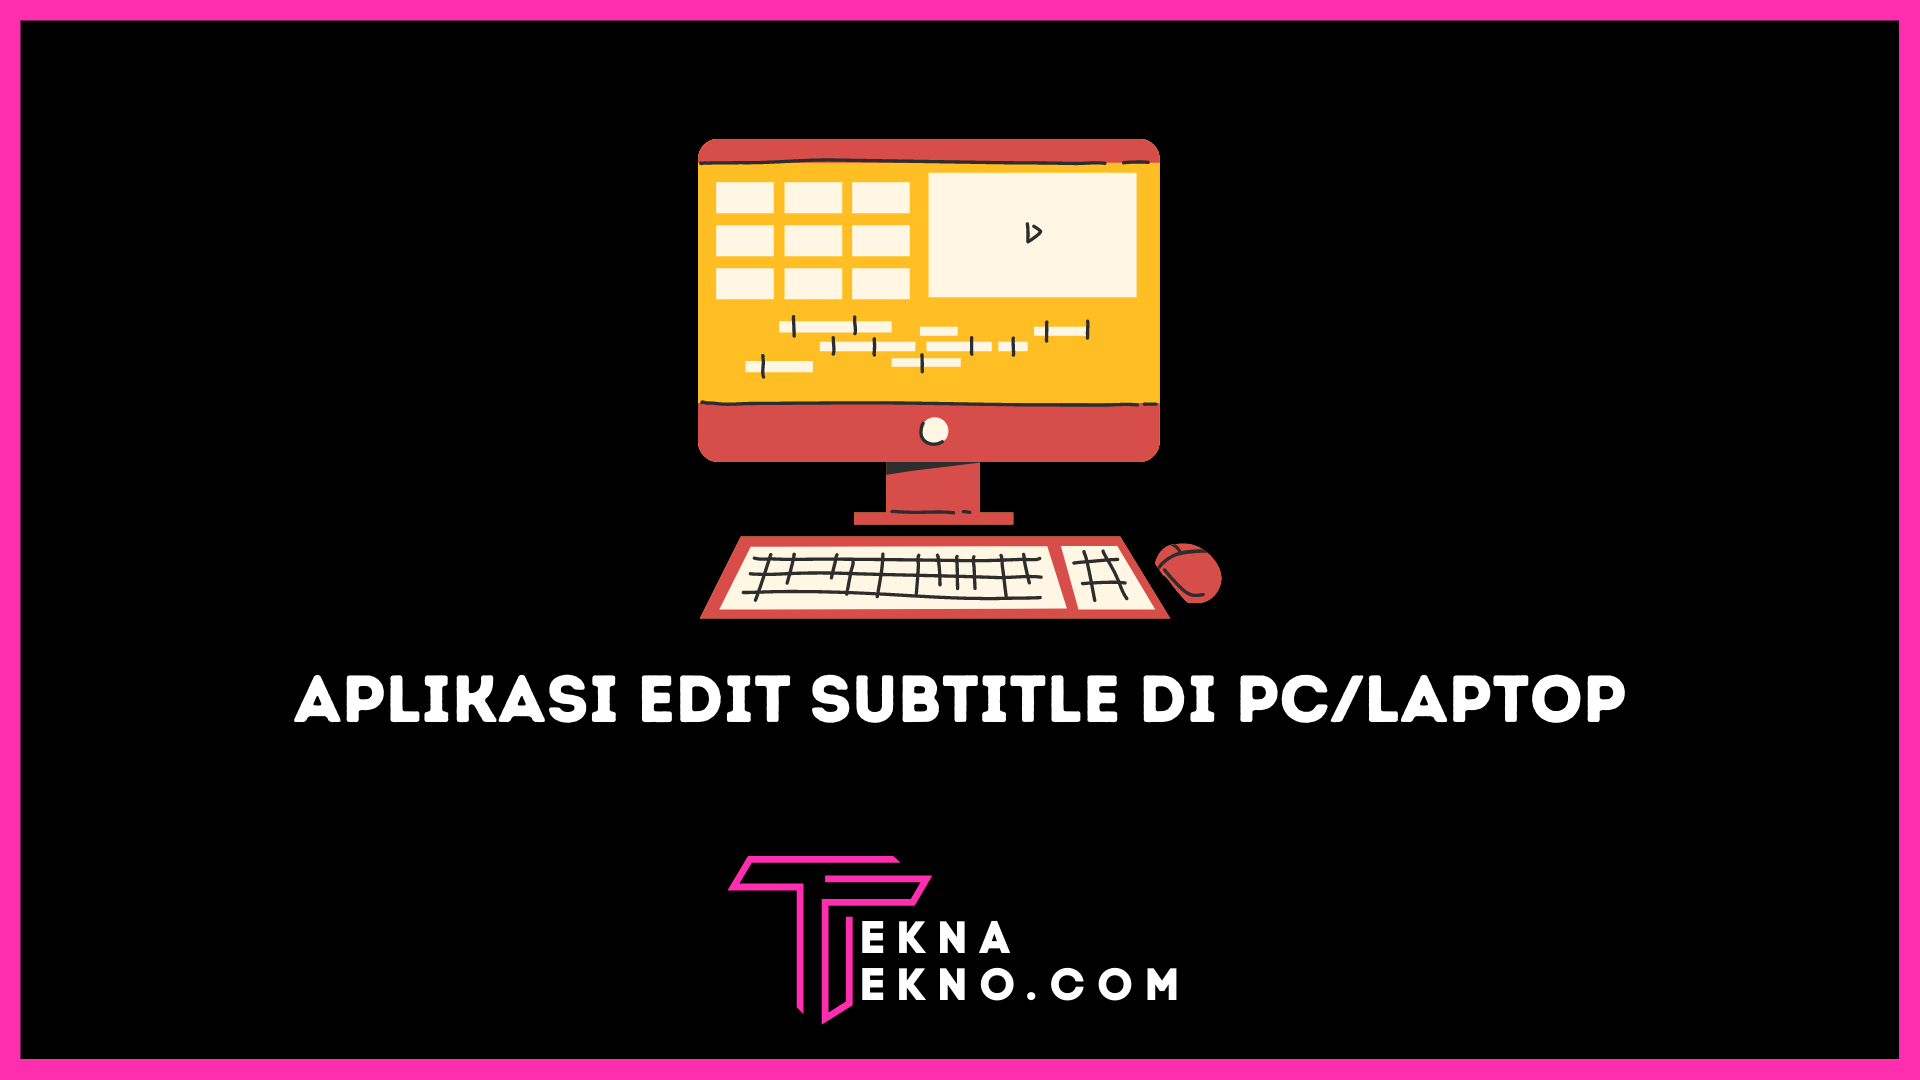 Aplikasi Untuk Edit Subtitle Gratis di PC atau Laptop